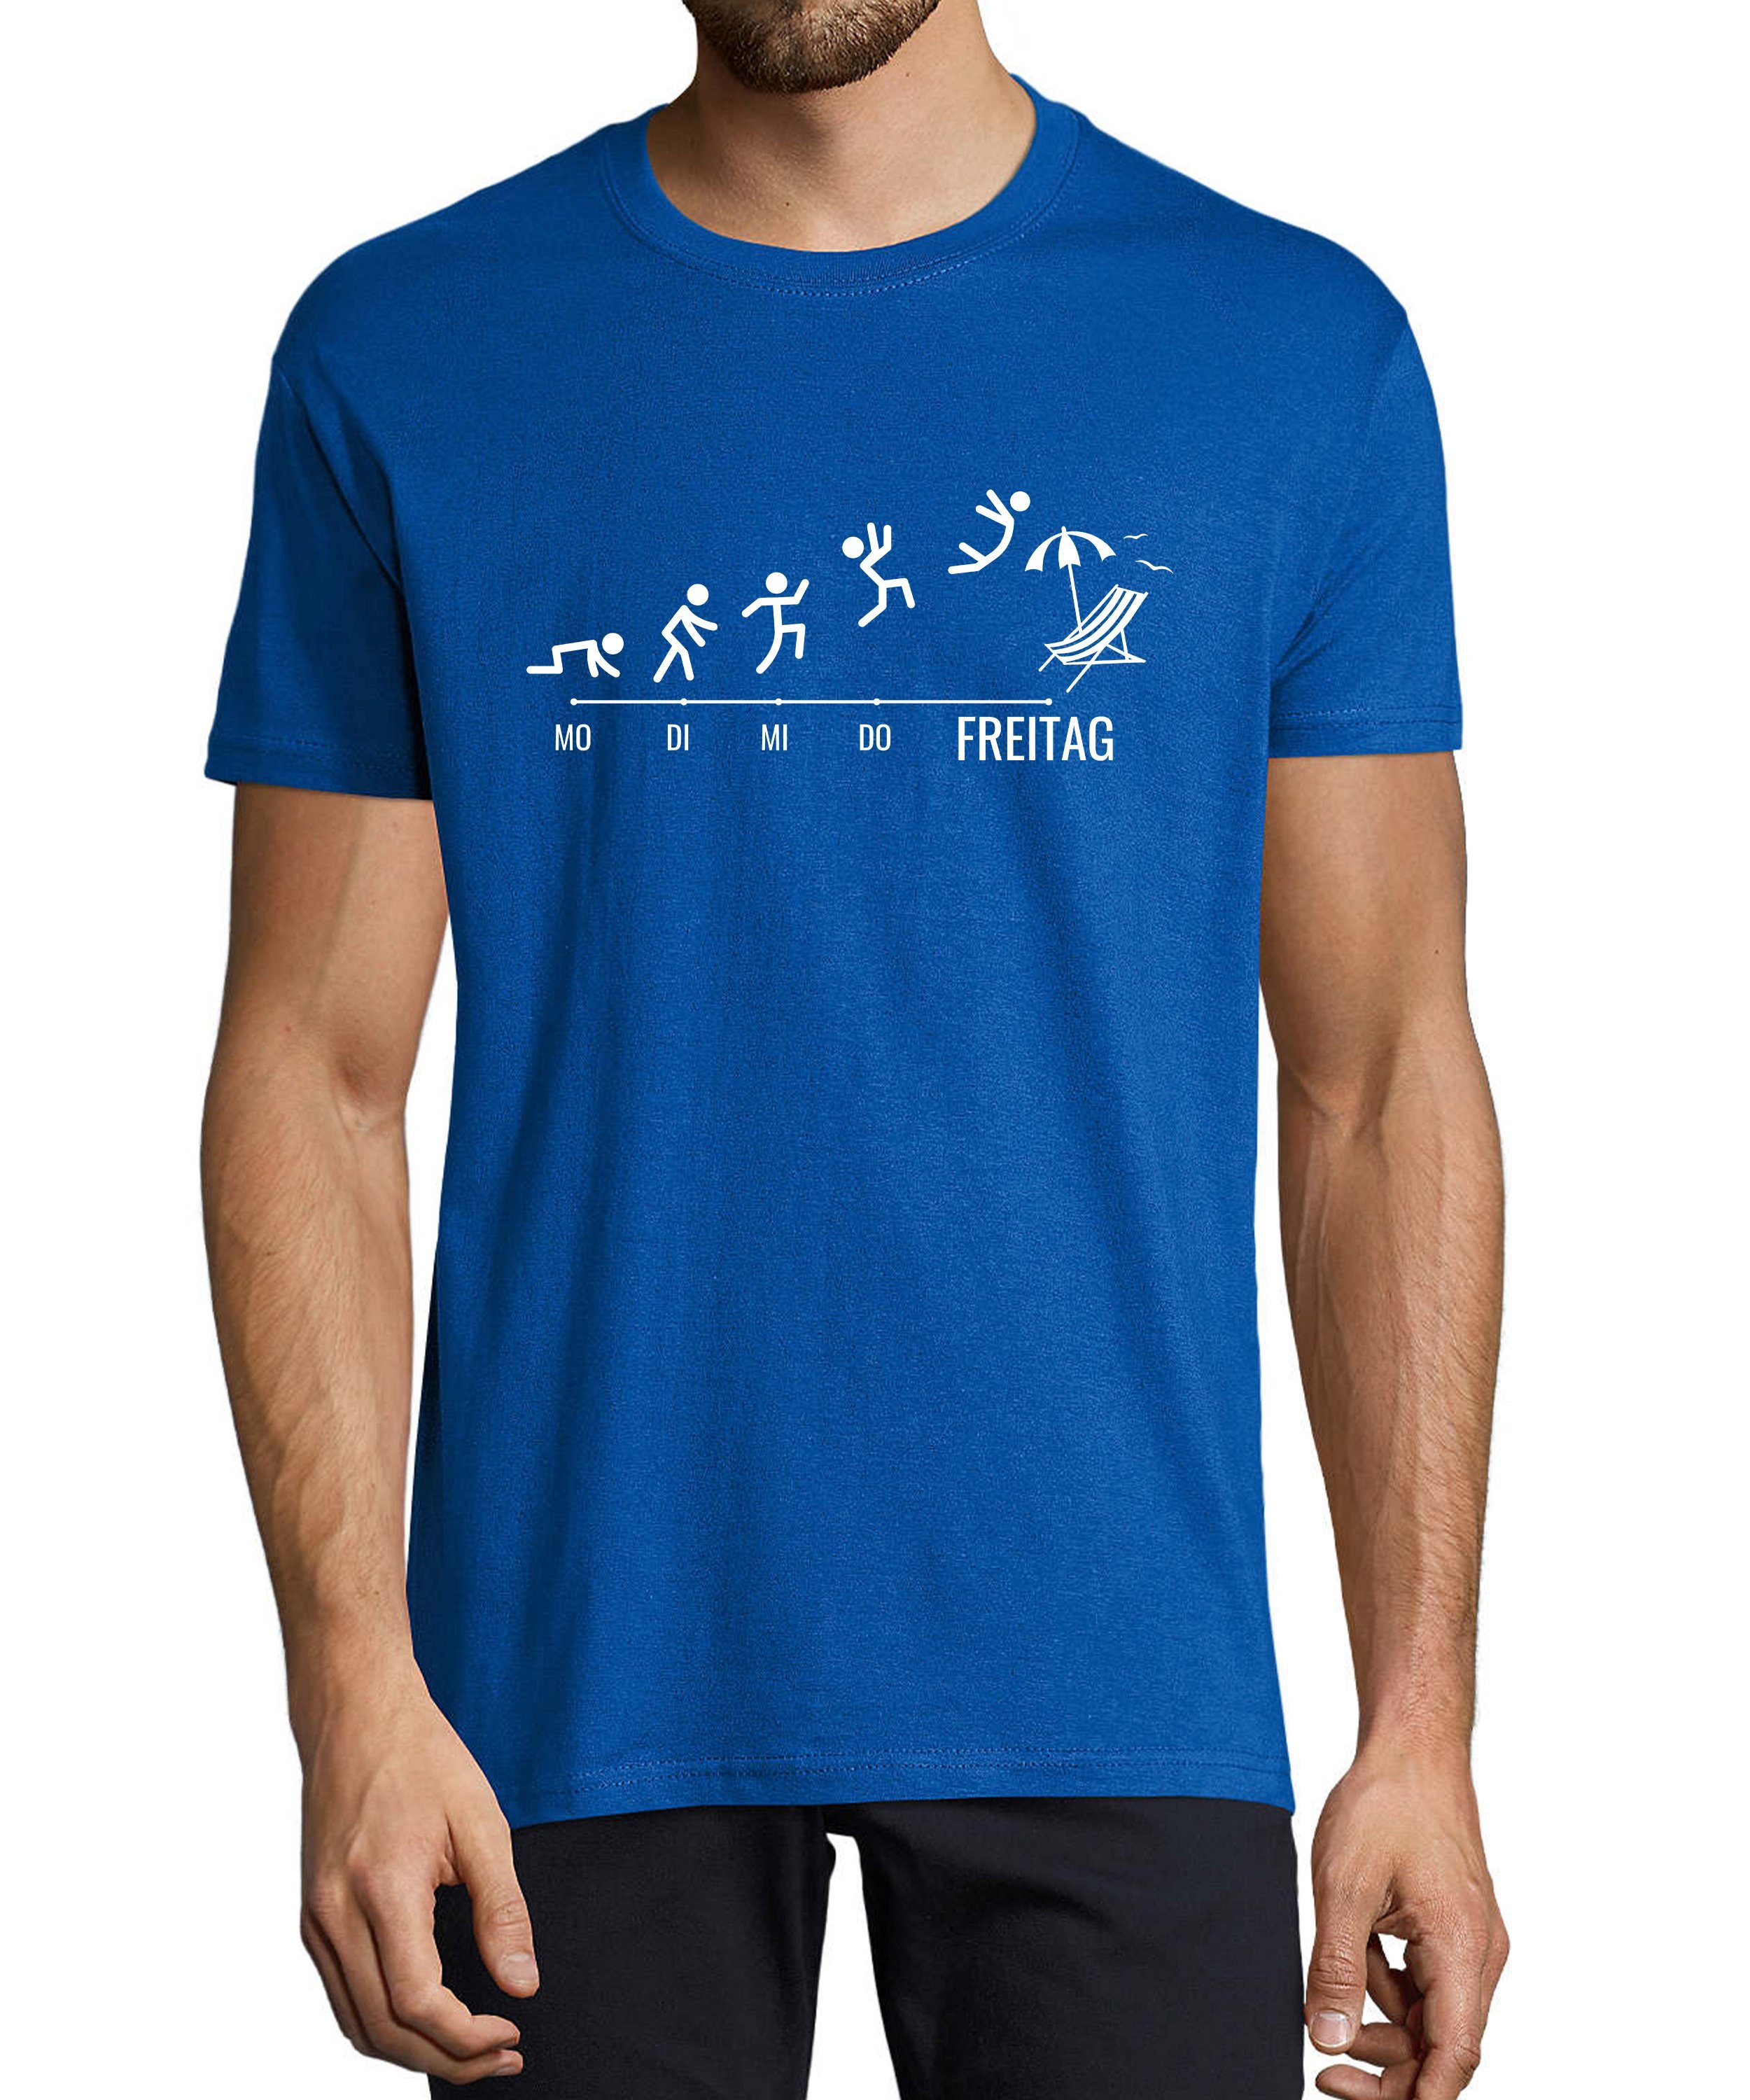 MyDesign24 T-Shirt Herren Fun Print Shirt - Wochentage mit Strichmännchen Baumwollshirt mit Aufdruck Regular Fit, i309 royal blau